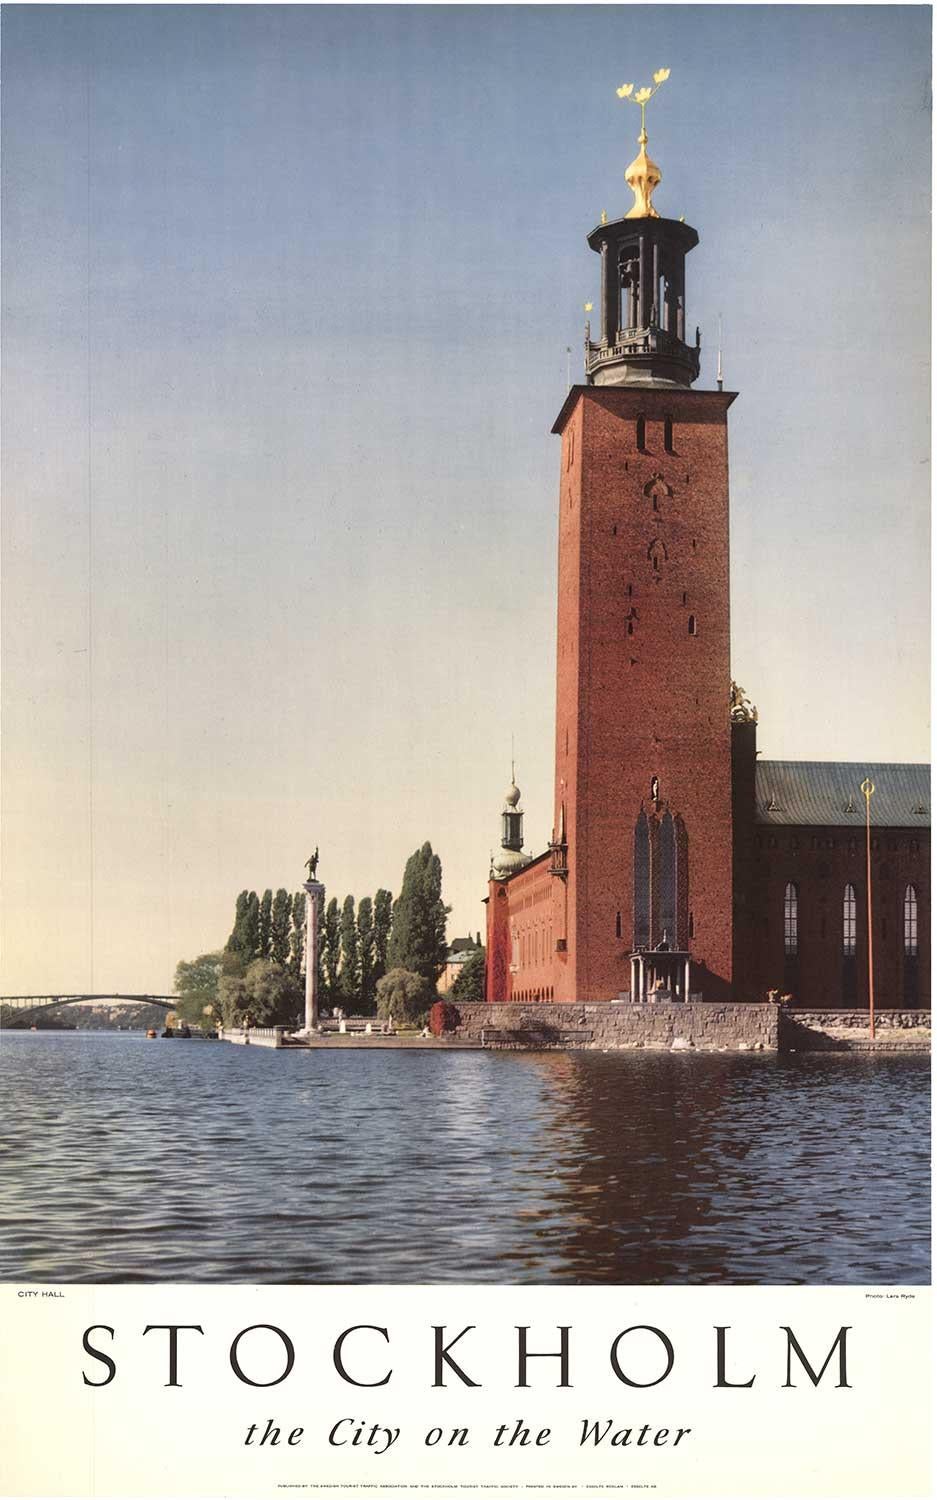 Lars Ryde Print - Original Stockholm (Sweden), the City on the Water" vintage travel poster